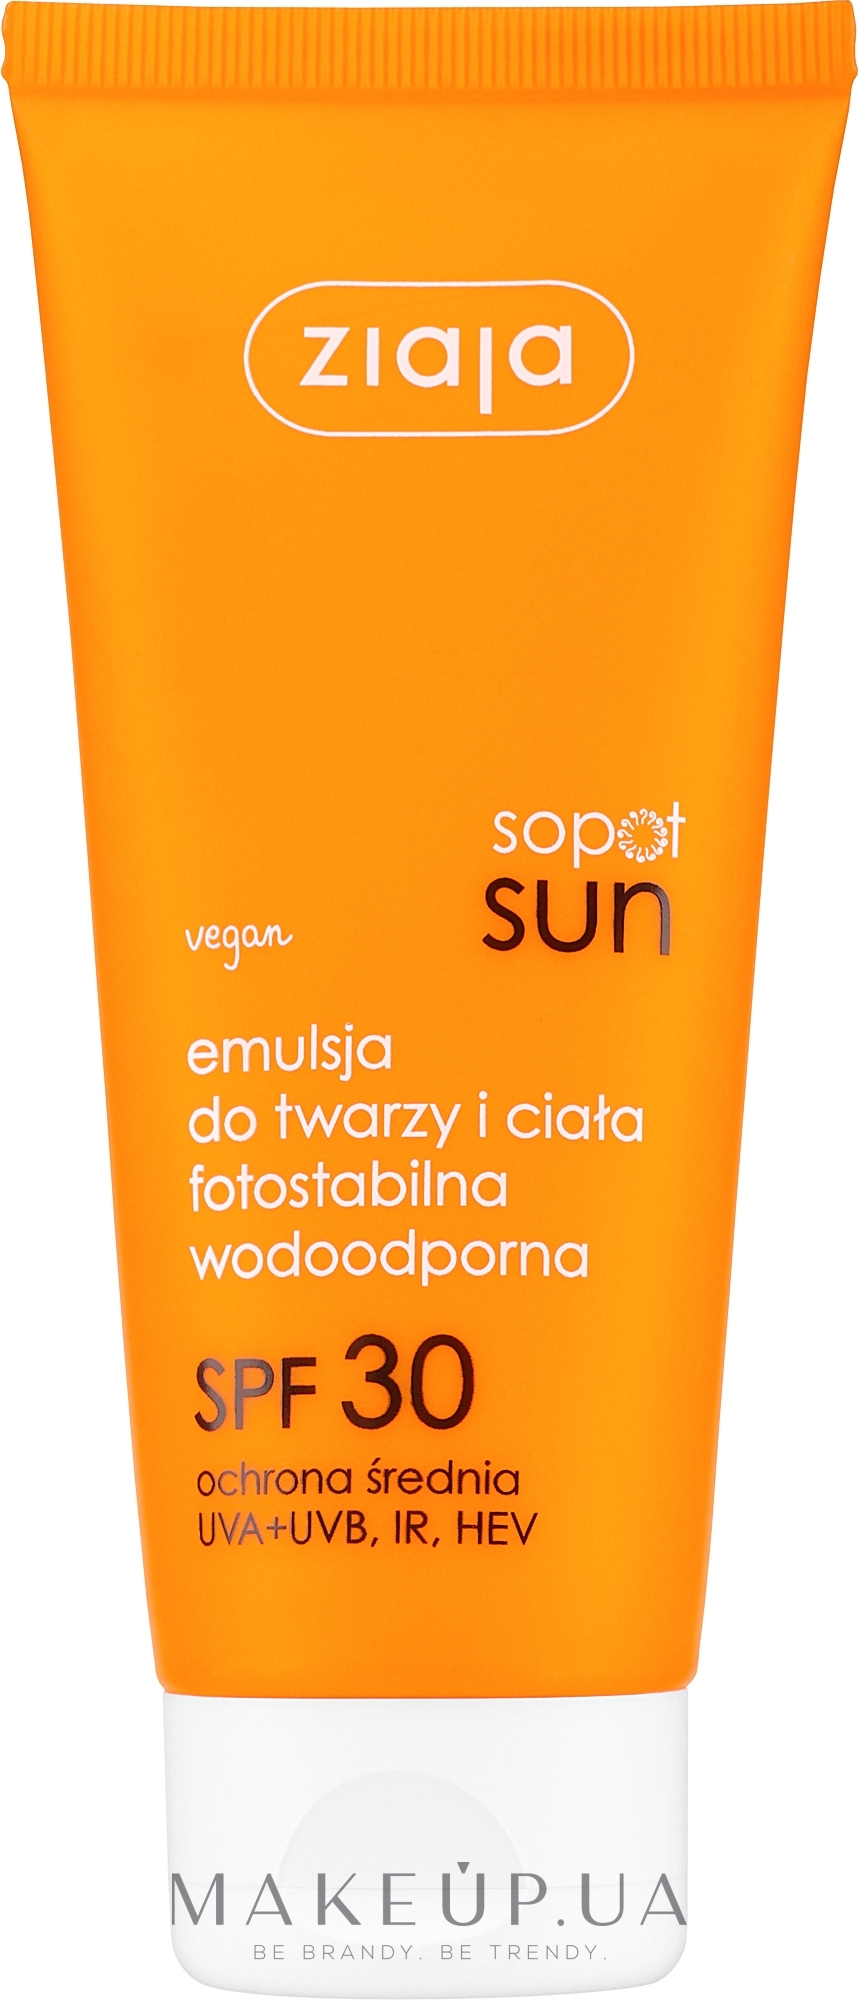 Водостойкая фотостабильная эмульсия для лица и тела SPF 30 - Ziaja Sopot Sun Face & Body Emulsion SPF 30 — фото 100ml